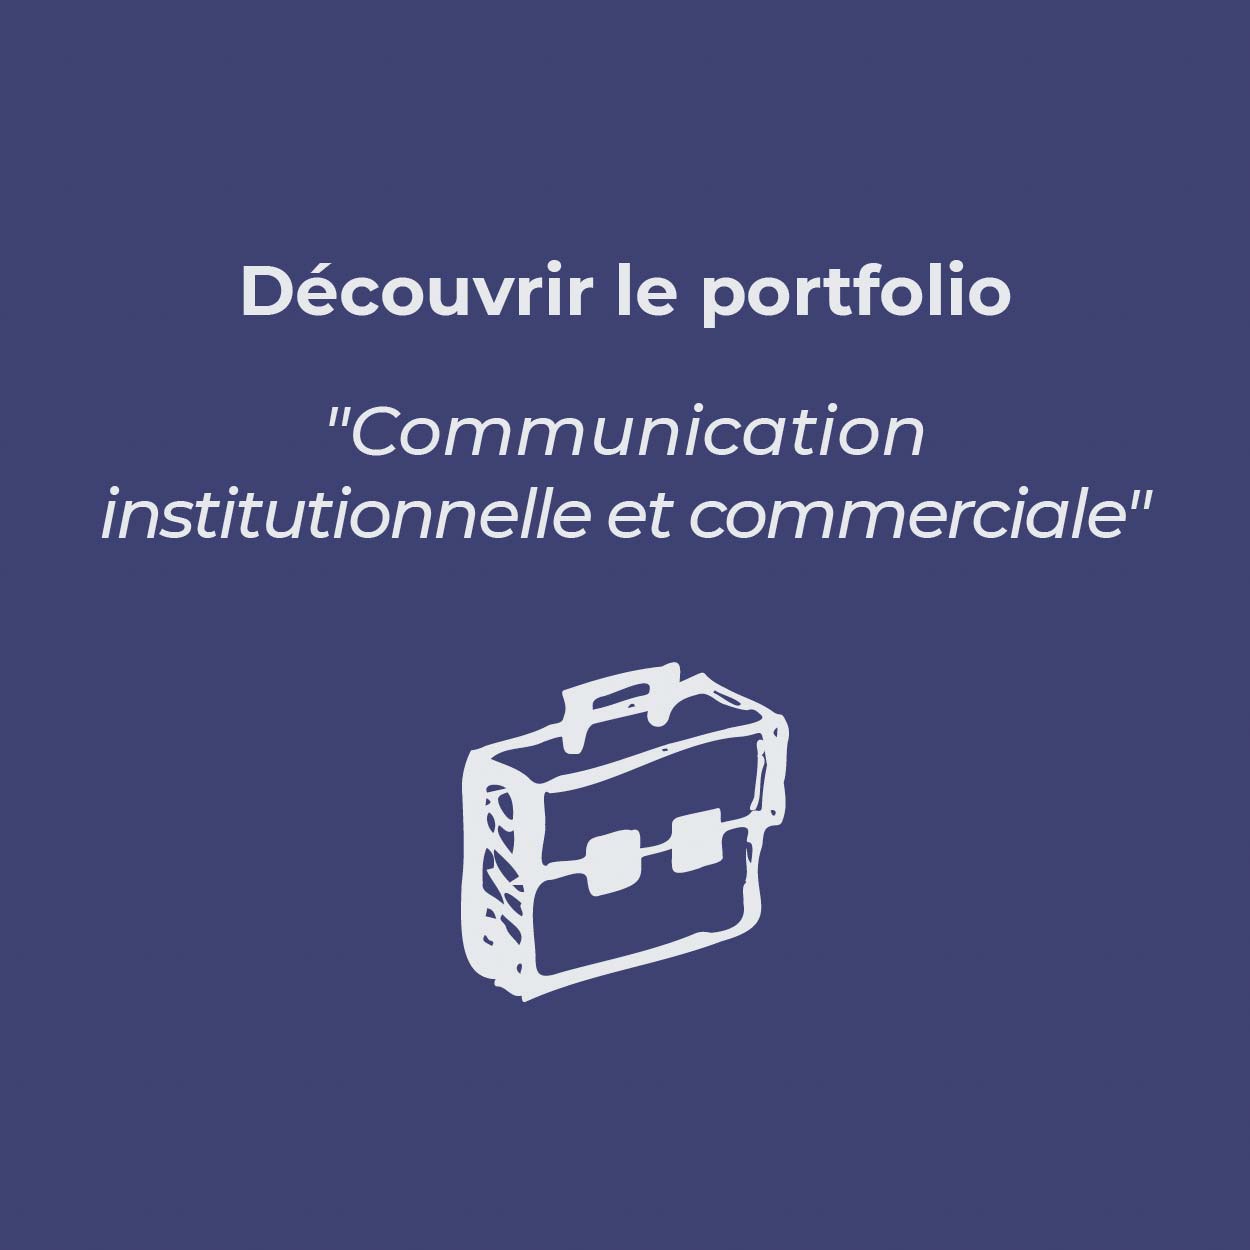 Bouton pour découvrir le portfolio « Communication institutionnelle et commerciale »